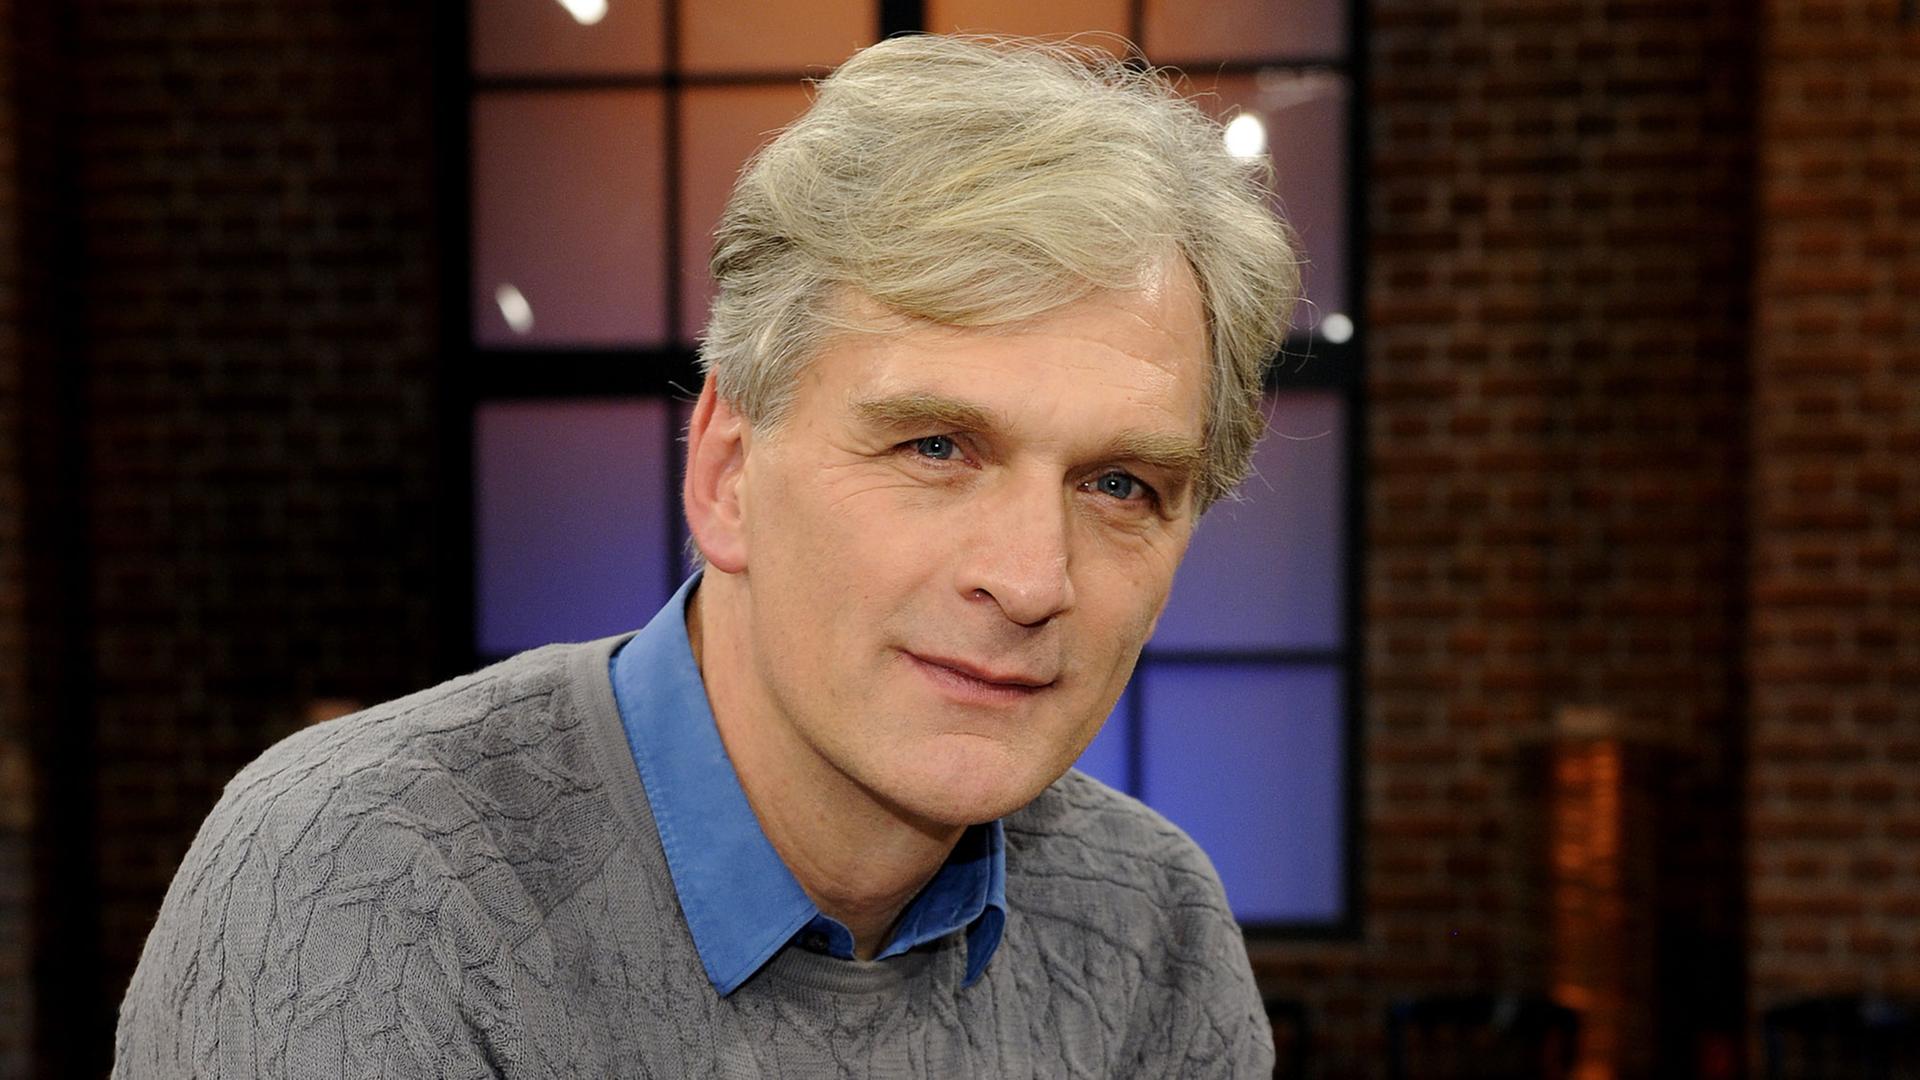 Der Schauspieler Walter Sittler zu Gast in der WDR Talkshow "Kölner Treff" (2013)